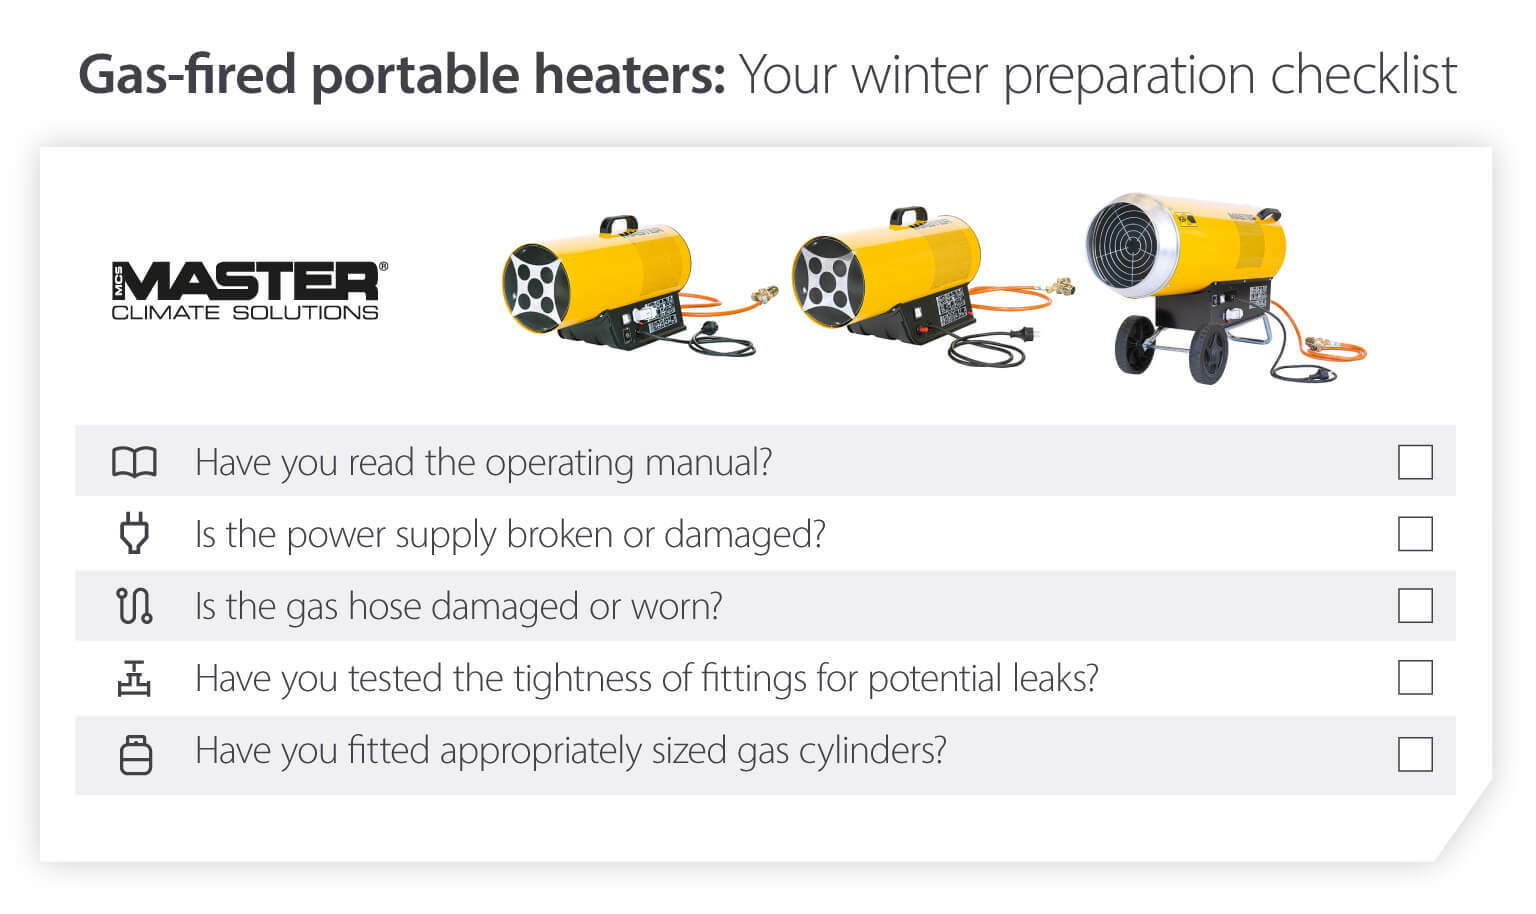 Tjekliste til forberedelse af transportabel gasfyret varmeenhed til vinteren for at sikre, at varmeenhderne fungerer ved lave temperaturer – infografikbillede